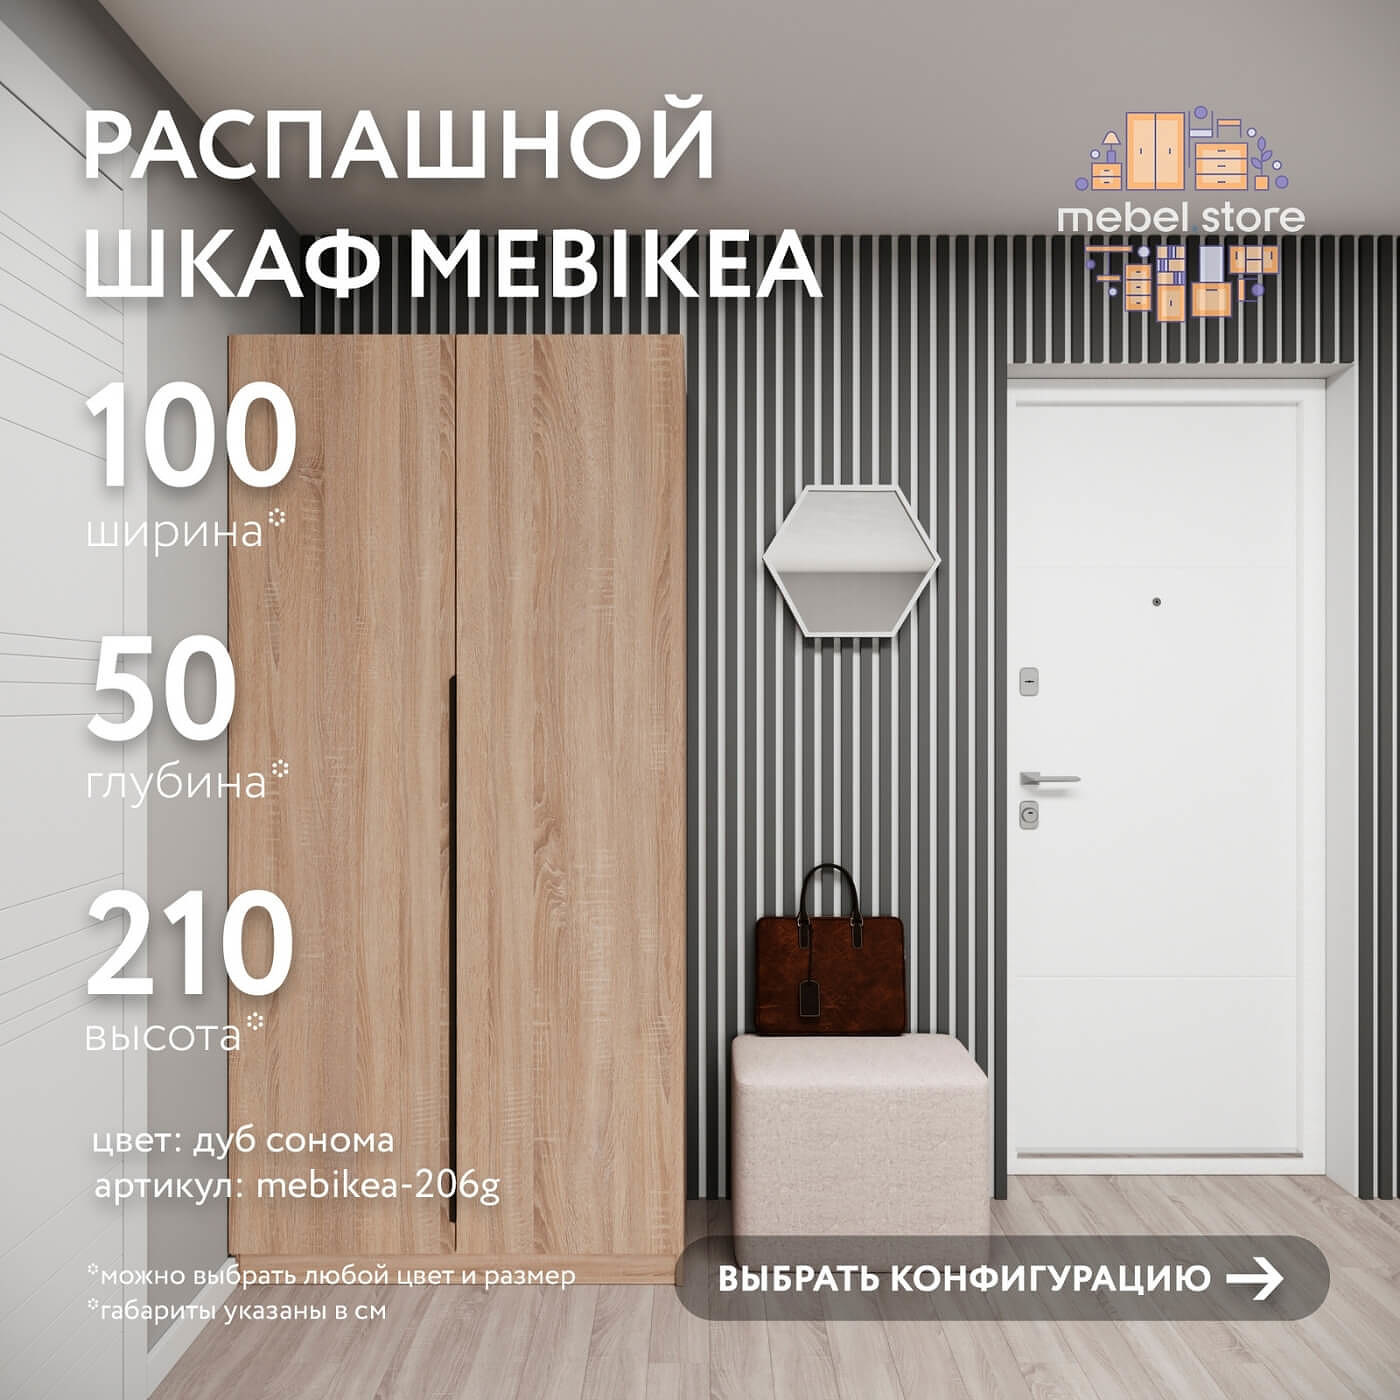 Шкаф Mebikea-206g минимализм для прихожей и спальни - фото 1 large